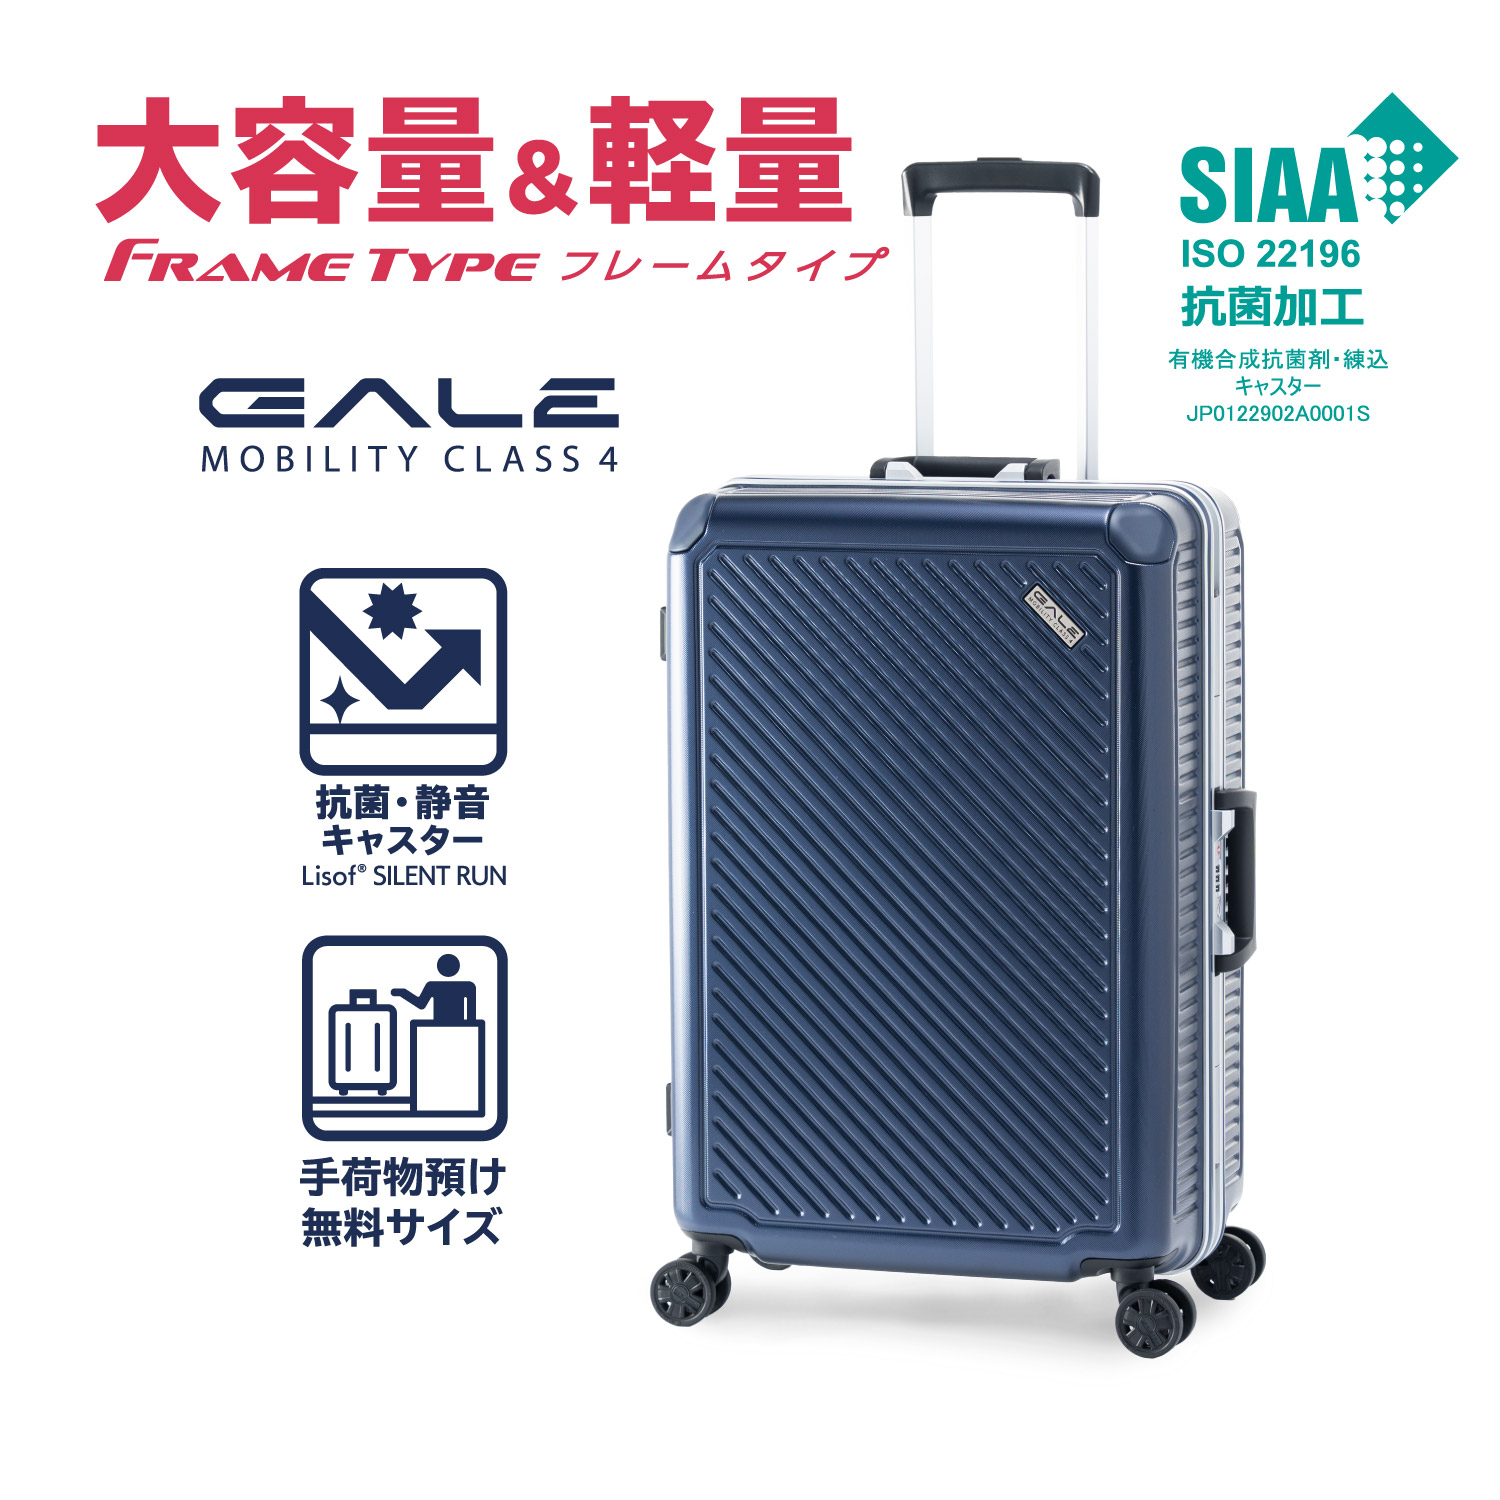 頑丈 | アジア・ラゲージ 公式サイト | Asia Luggage Inc.